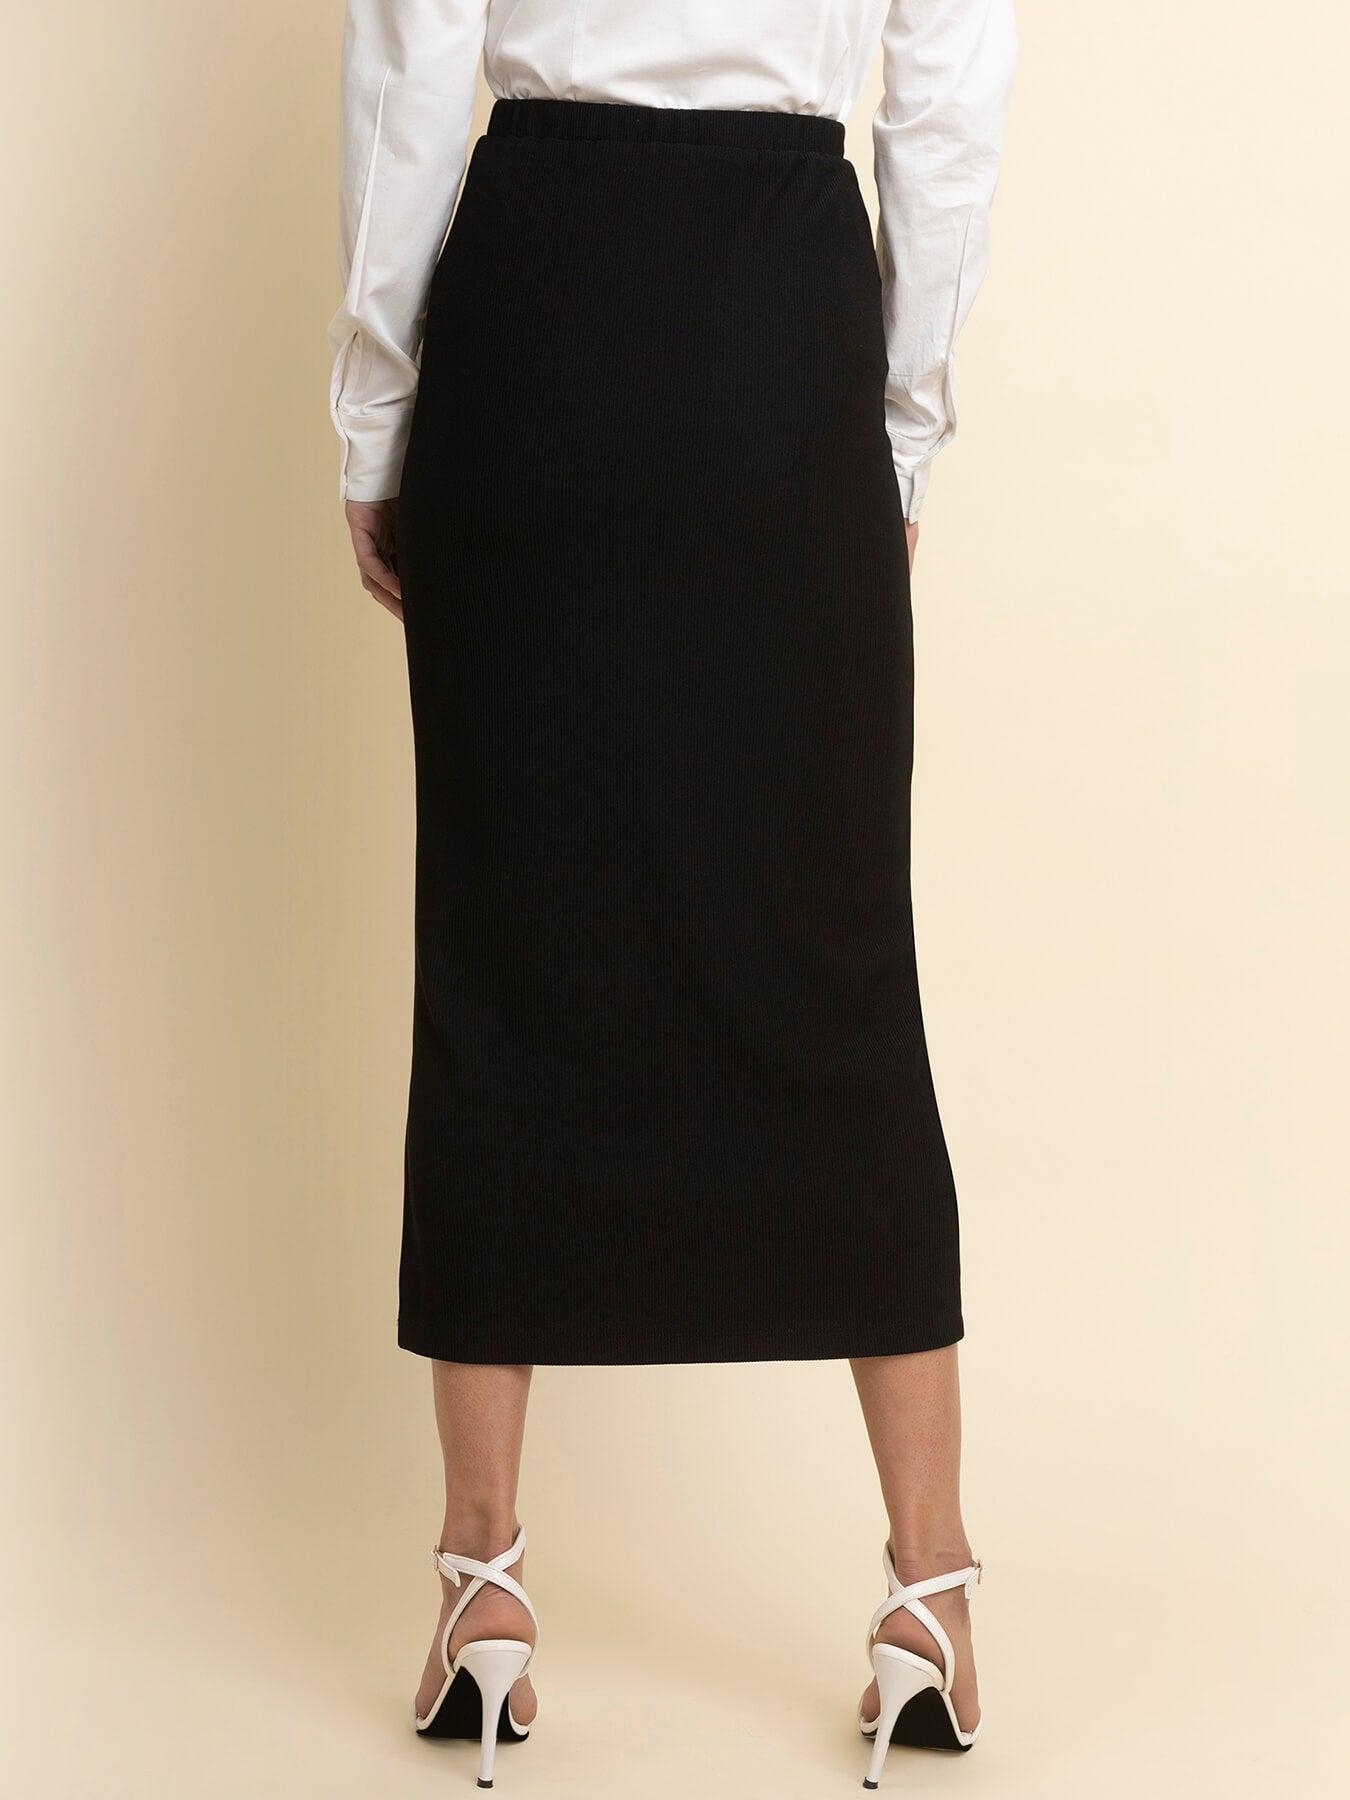 LivIn Midi Skirt - Black| Formal Skirts